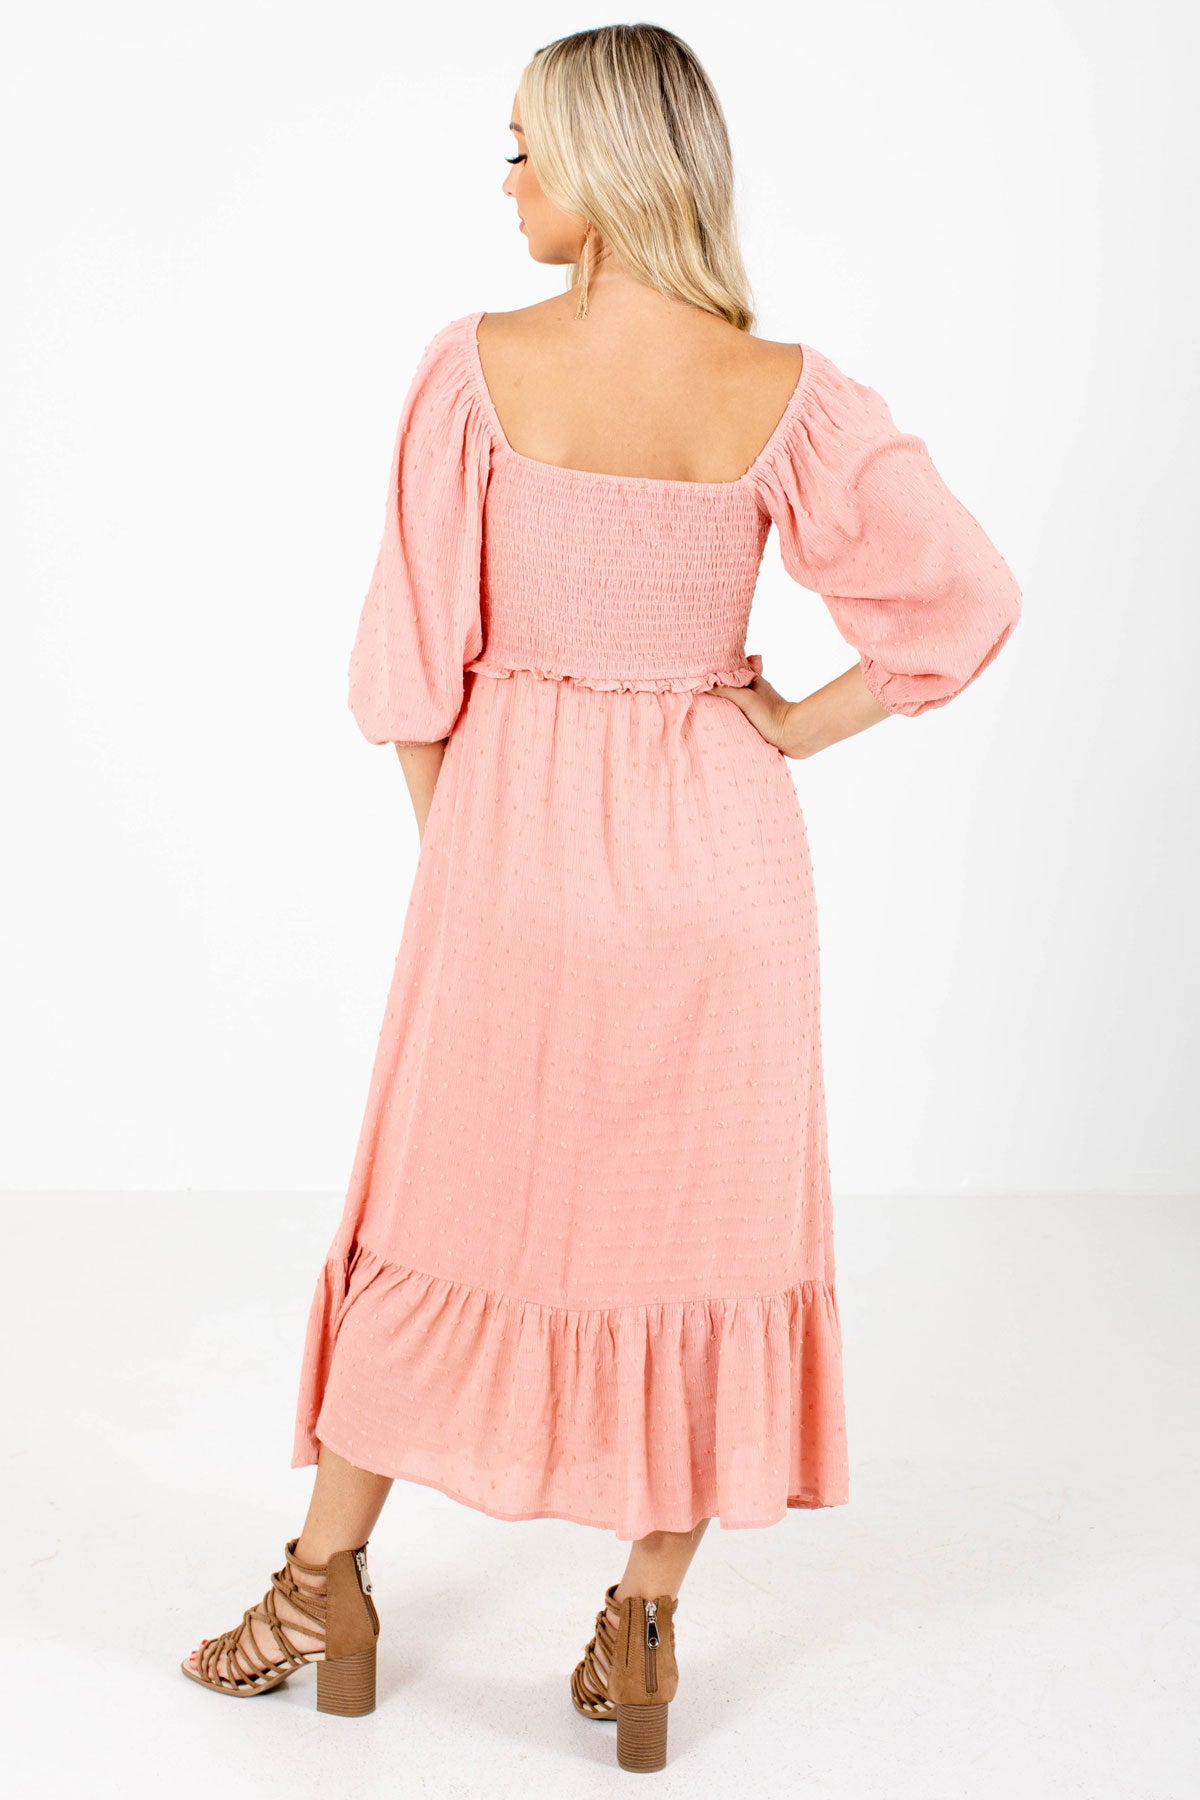 Women's Pink Swiss Dot Material Boutique Maxi Dress